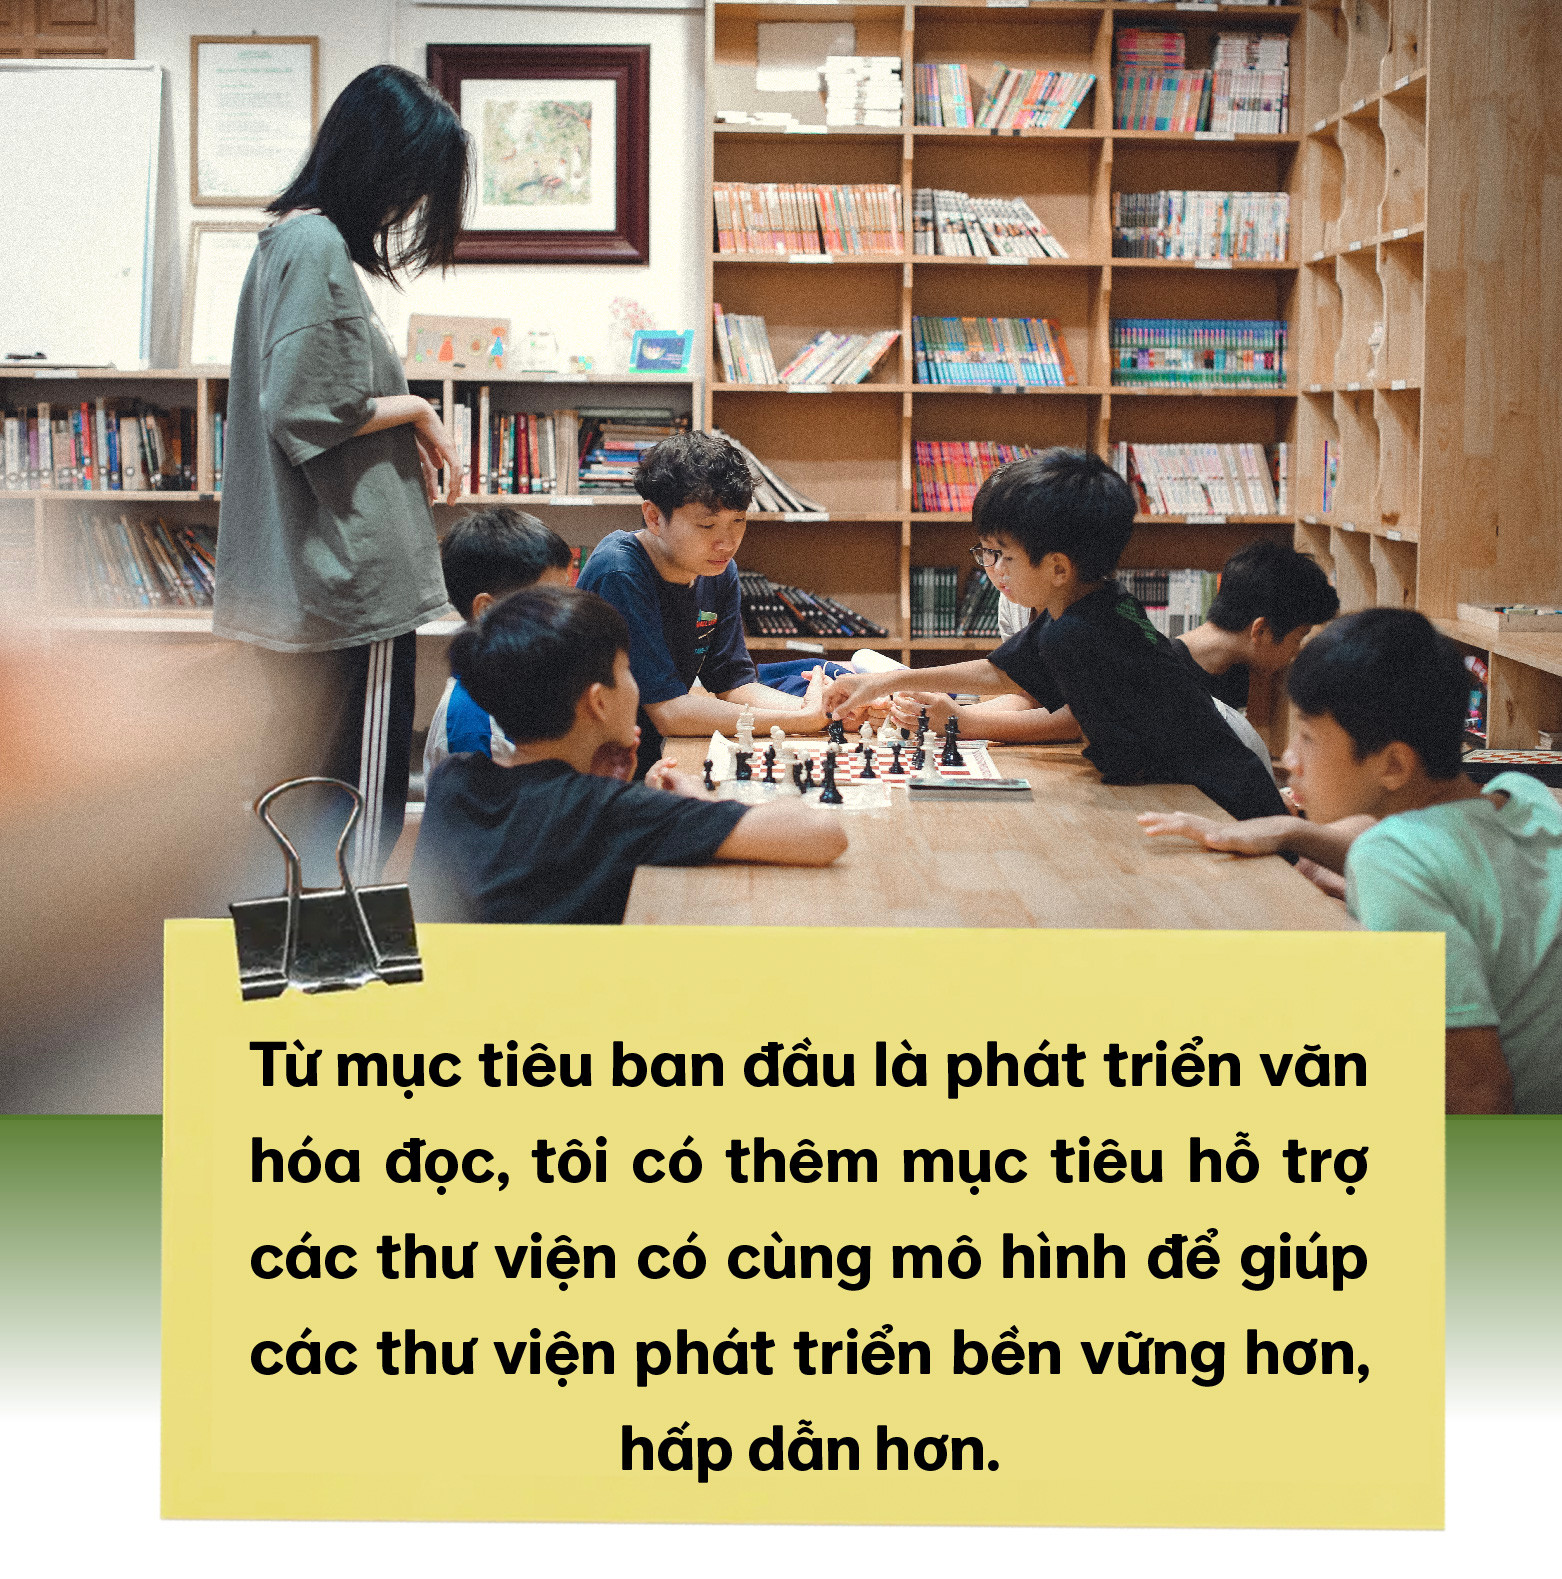 9x với giấc mơ tạo ra những điều kỳ diệu với sách, lan tỏa văn hóa hóa đọc khắp Việt Nam - Ảnh 4.